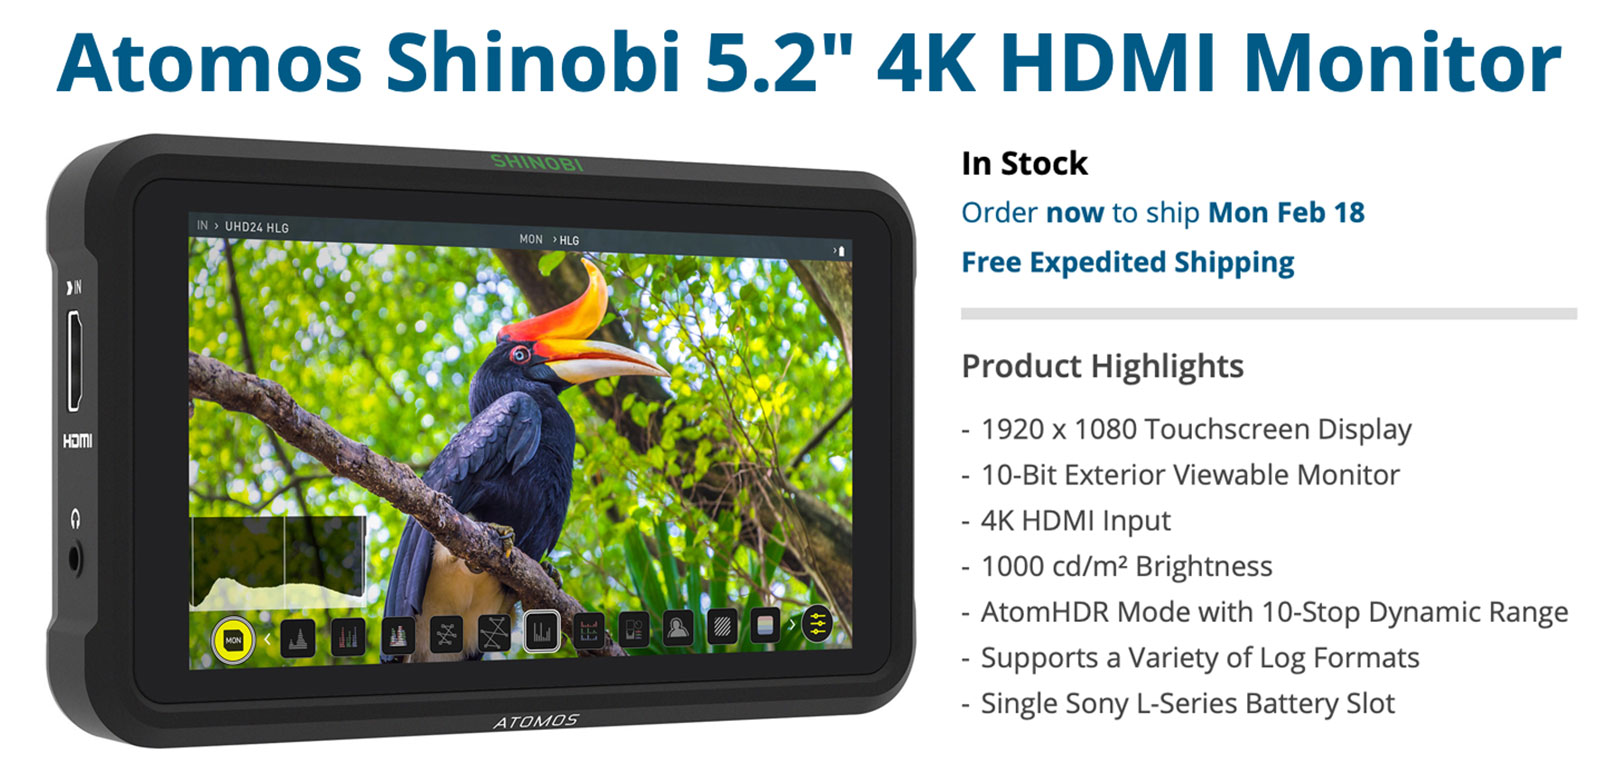 Atomos-Shinobi-4K-HDMI-Monitor